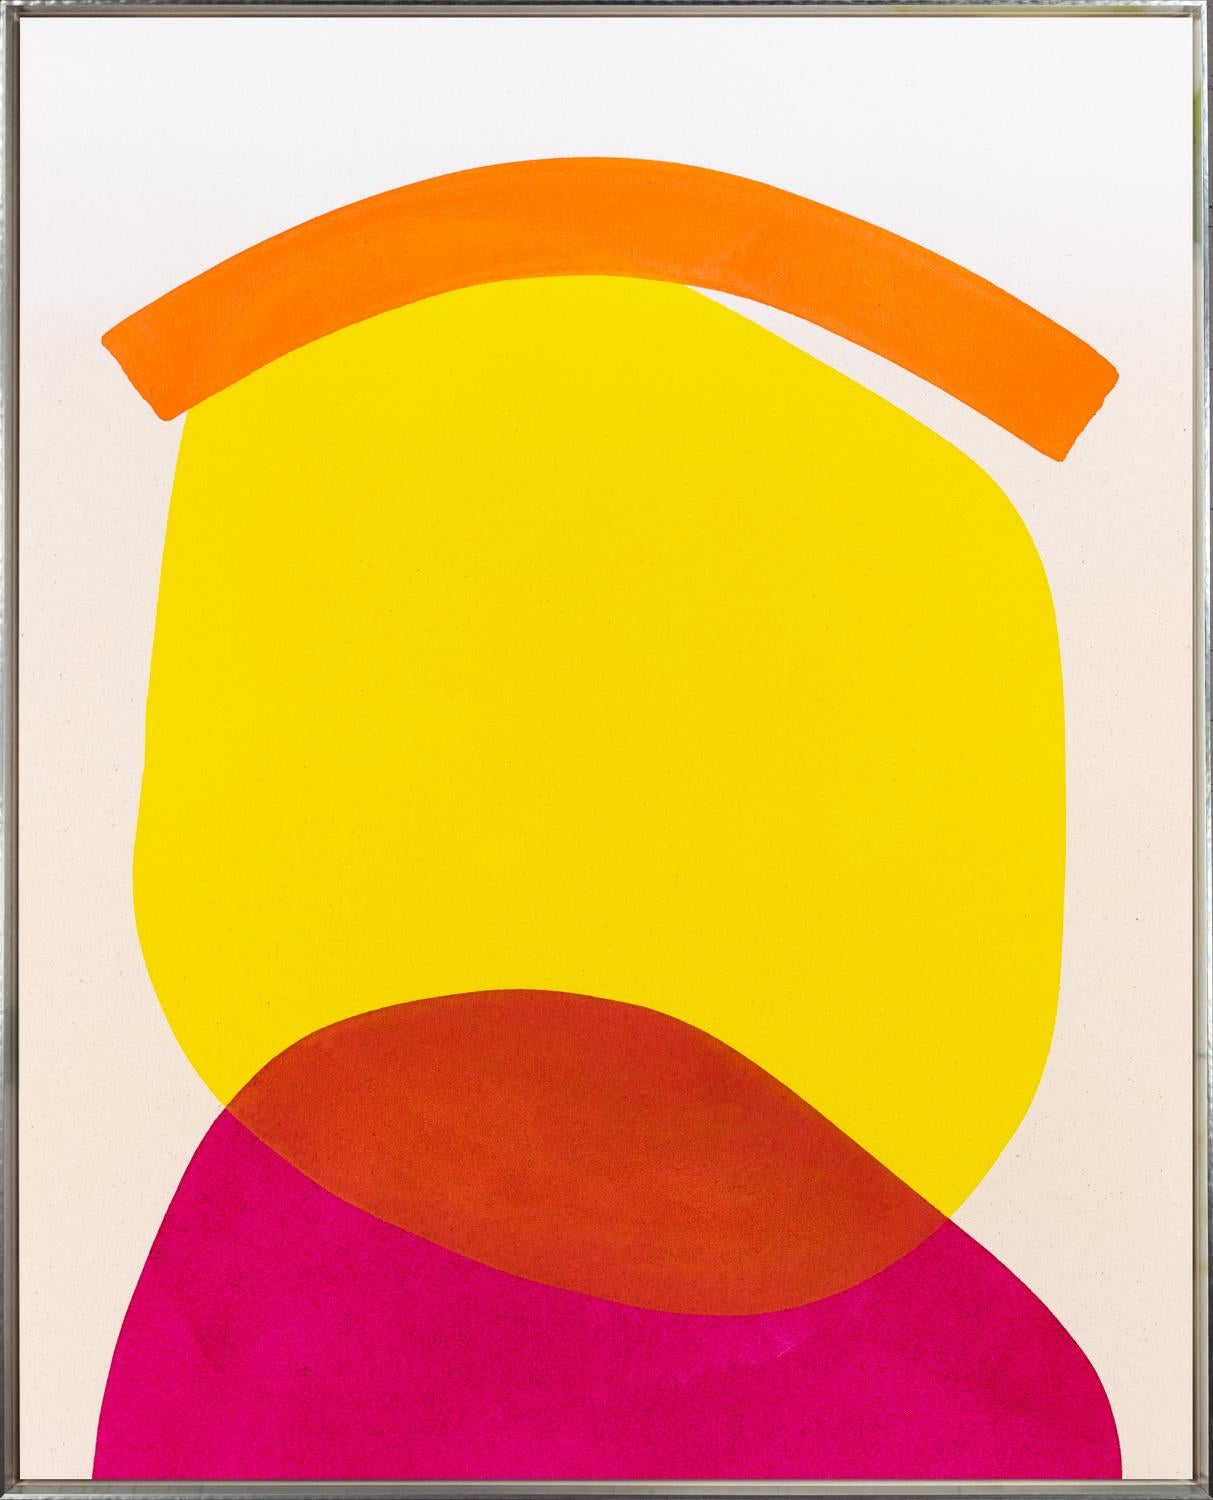 "Stilles Haus mit gelbem und magentafarbenem und orangefarbenem Dach" Zeitgenössische Malerei – Painting von Aron Hill